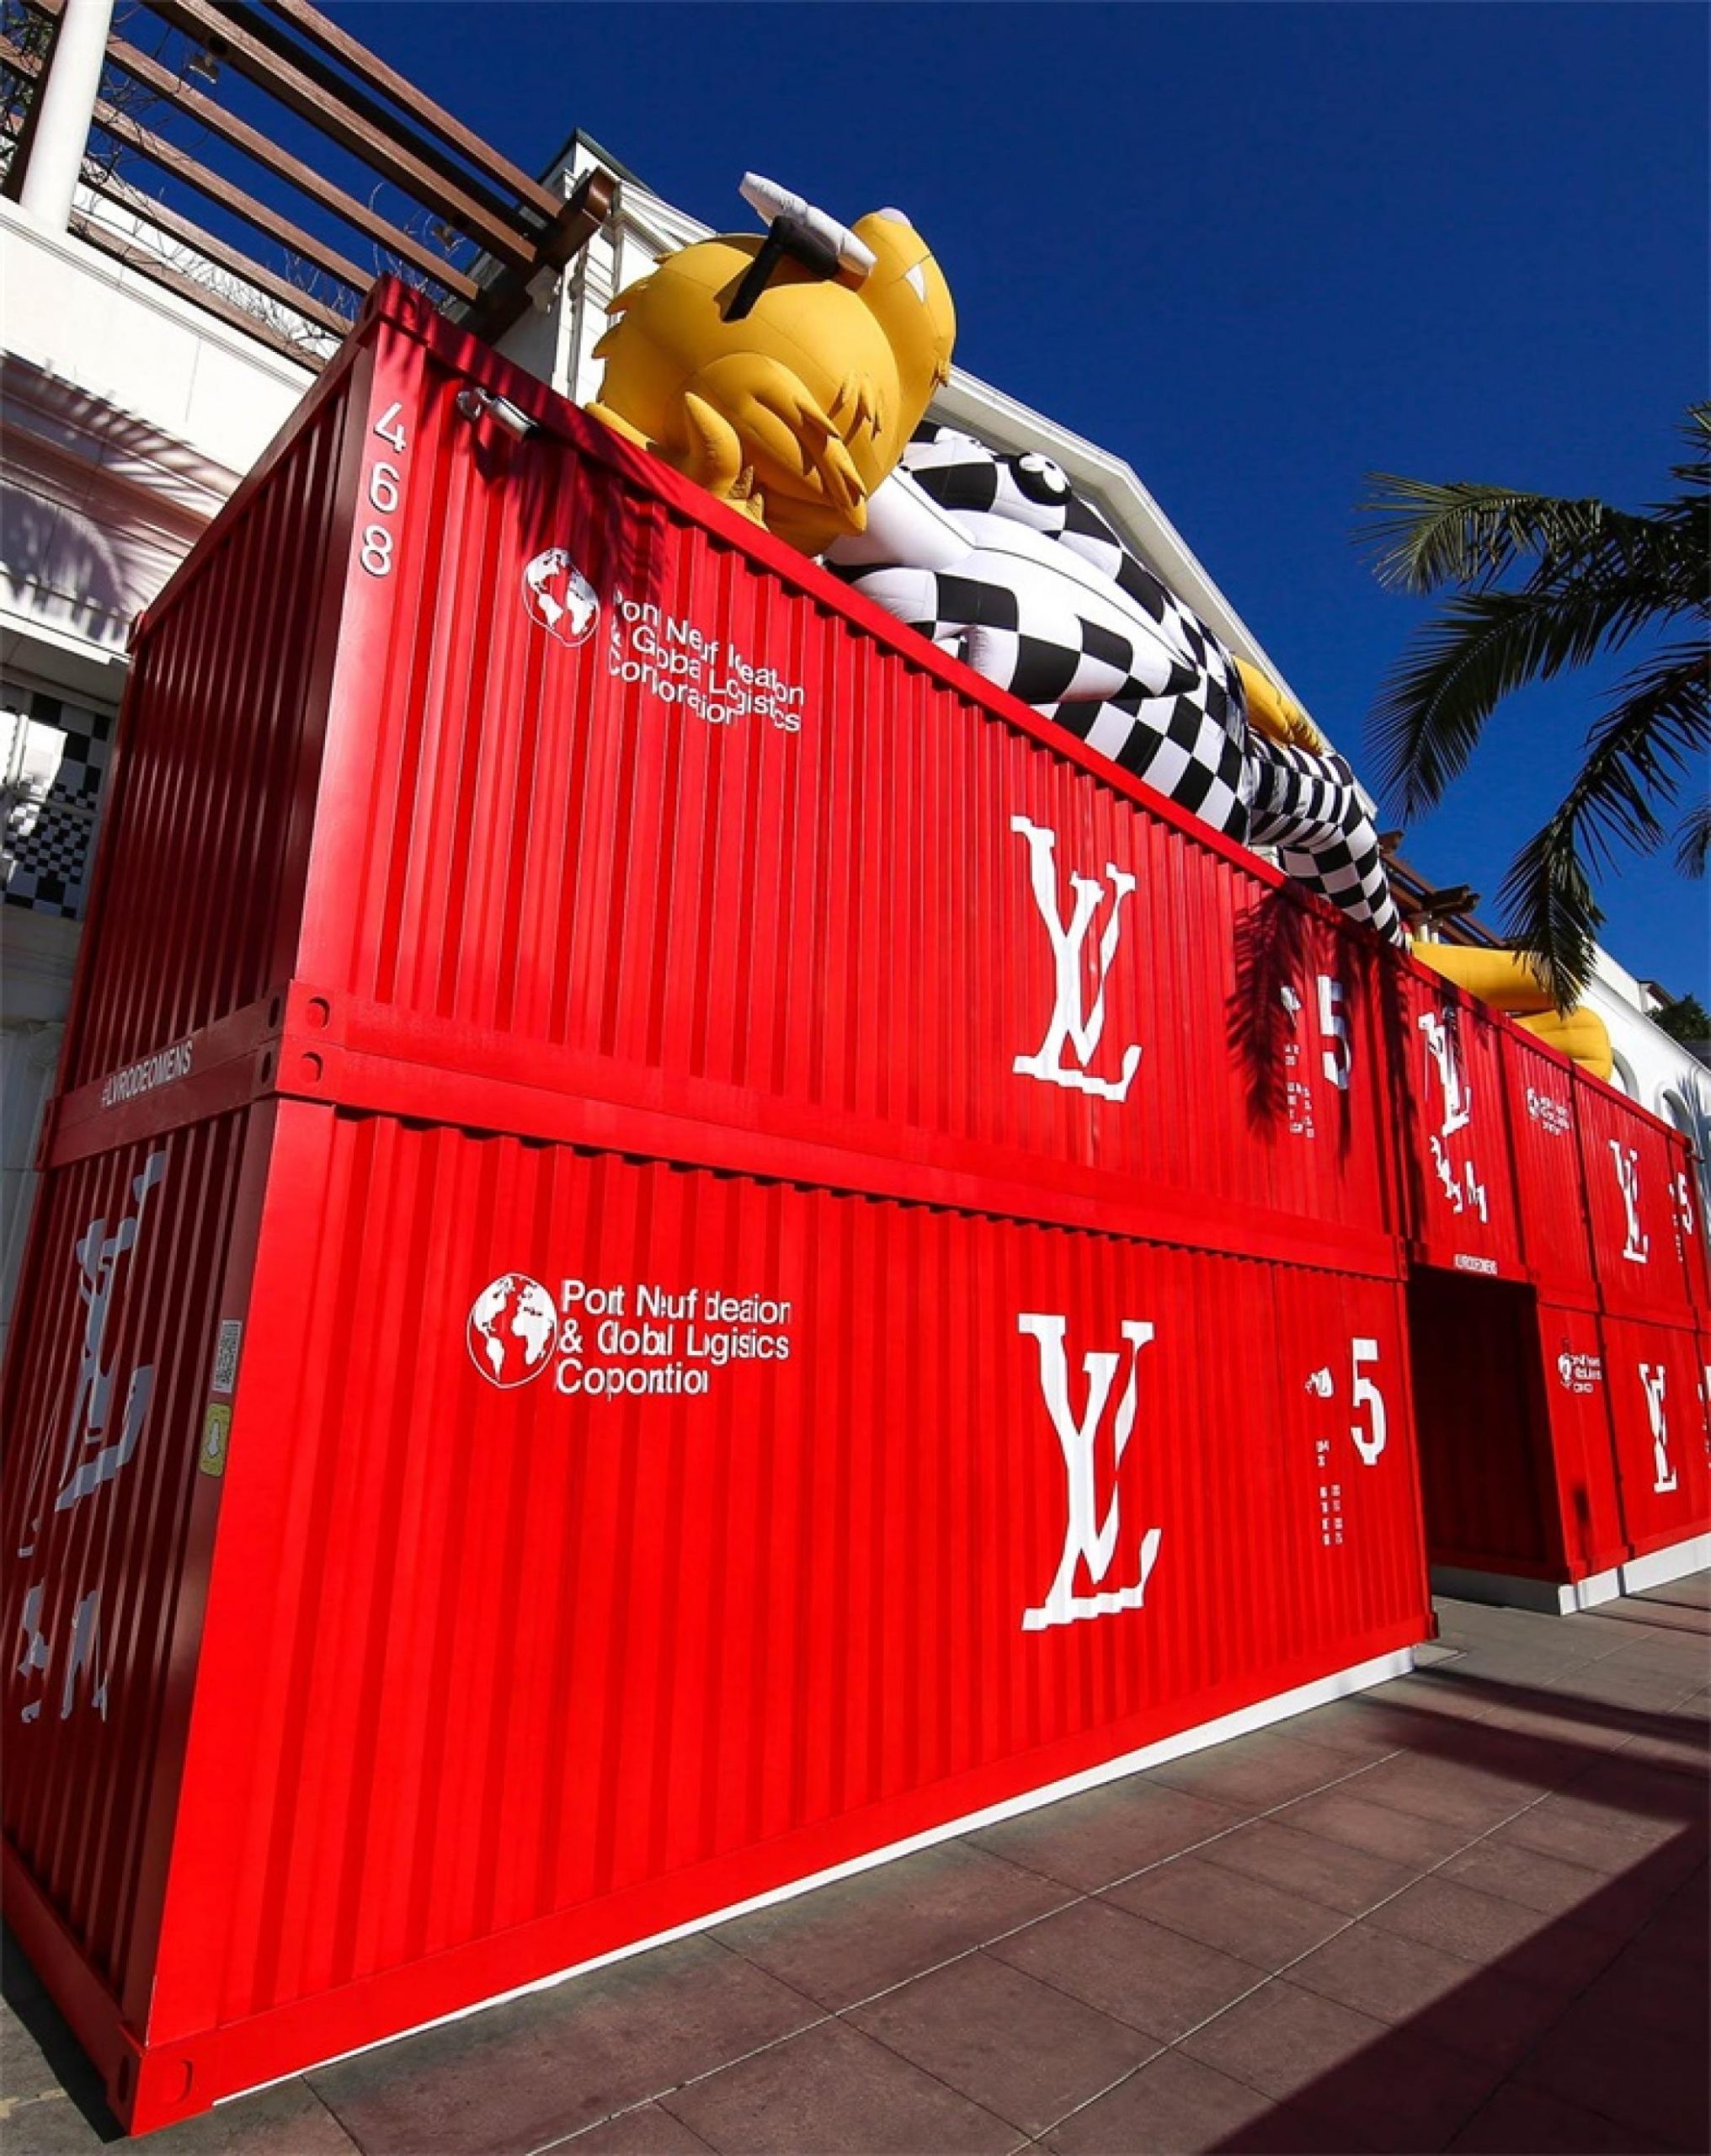 「路易.威登男人的临时居所」艺术展示活动策划的鲜红集装箱入口亮了 美陈网站 美陈前沿 